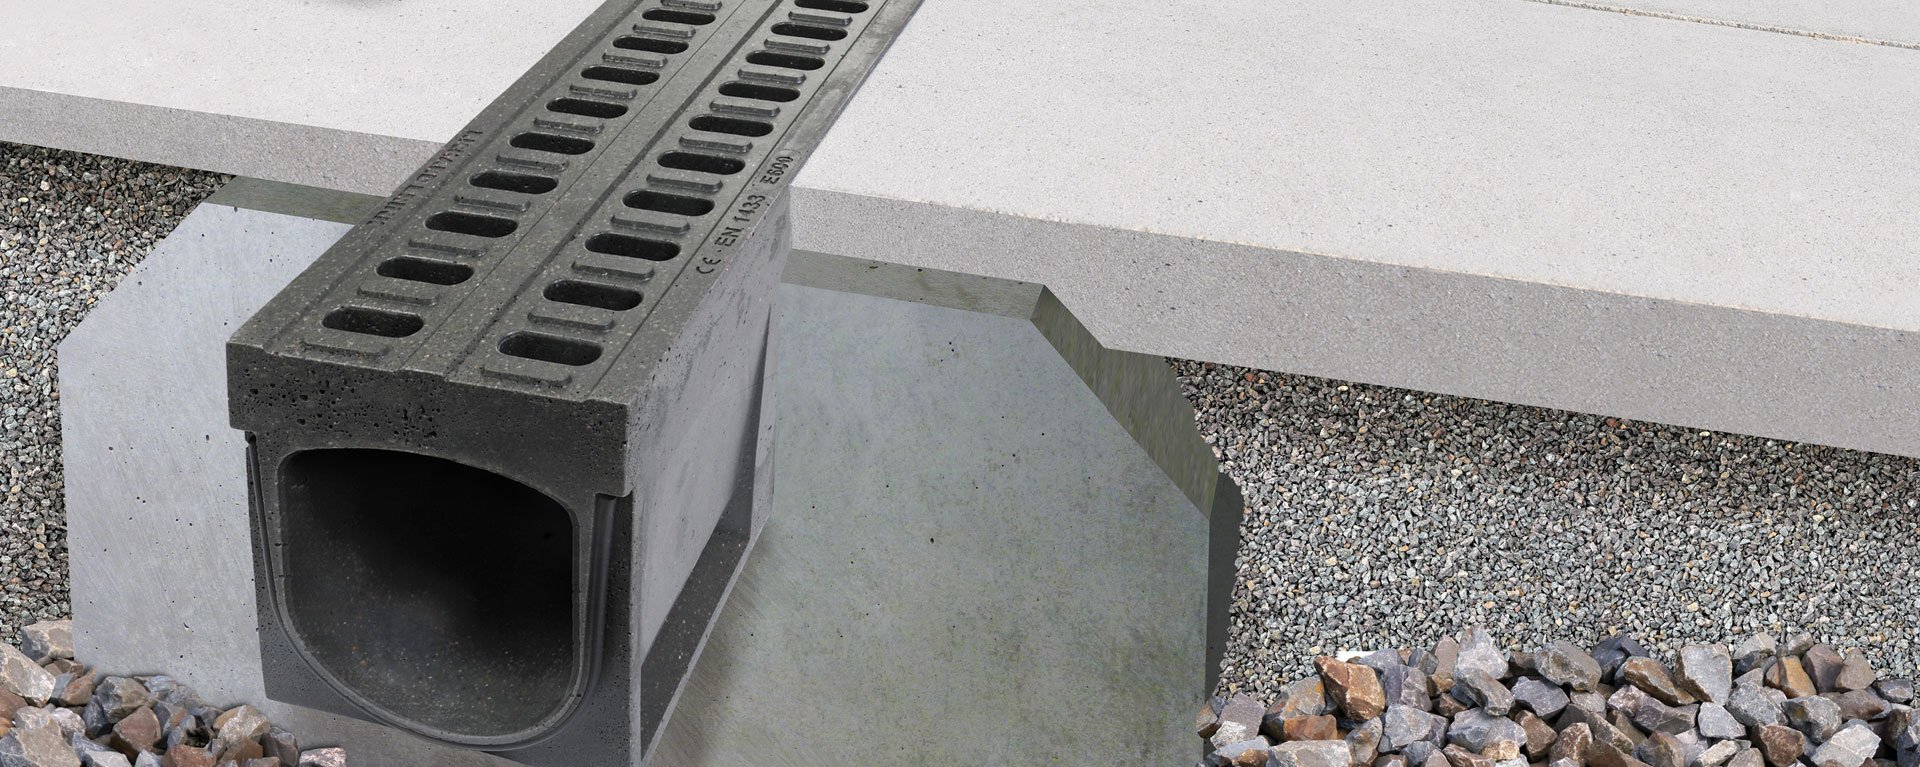 Betonrinne Mono-Fortis aus Polymerbeton für den Schwerlastbereich mit LKW befahrbar für Industrie & Werks Gelände